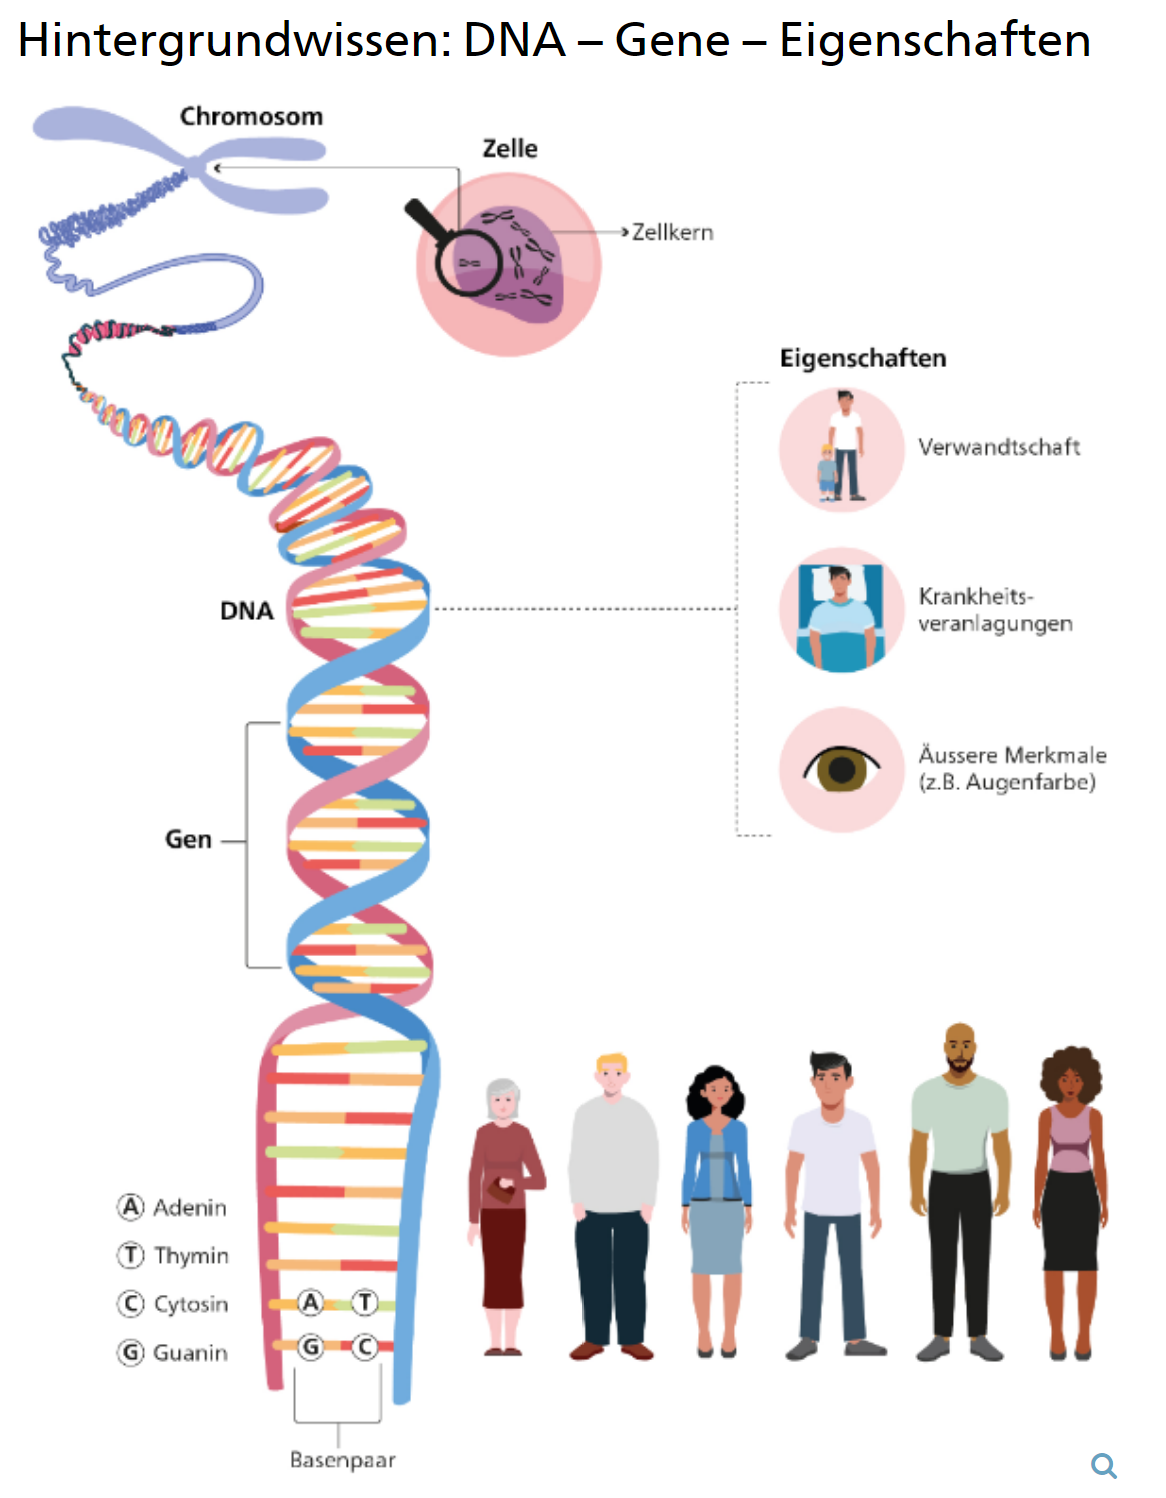 Hintergrundwissen: DNA – Gene – Eigenschaften